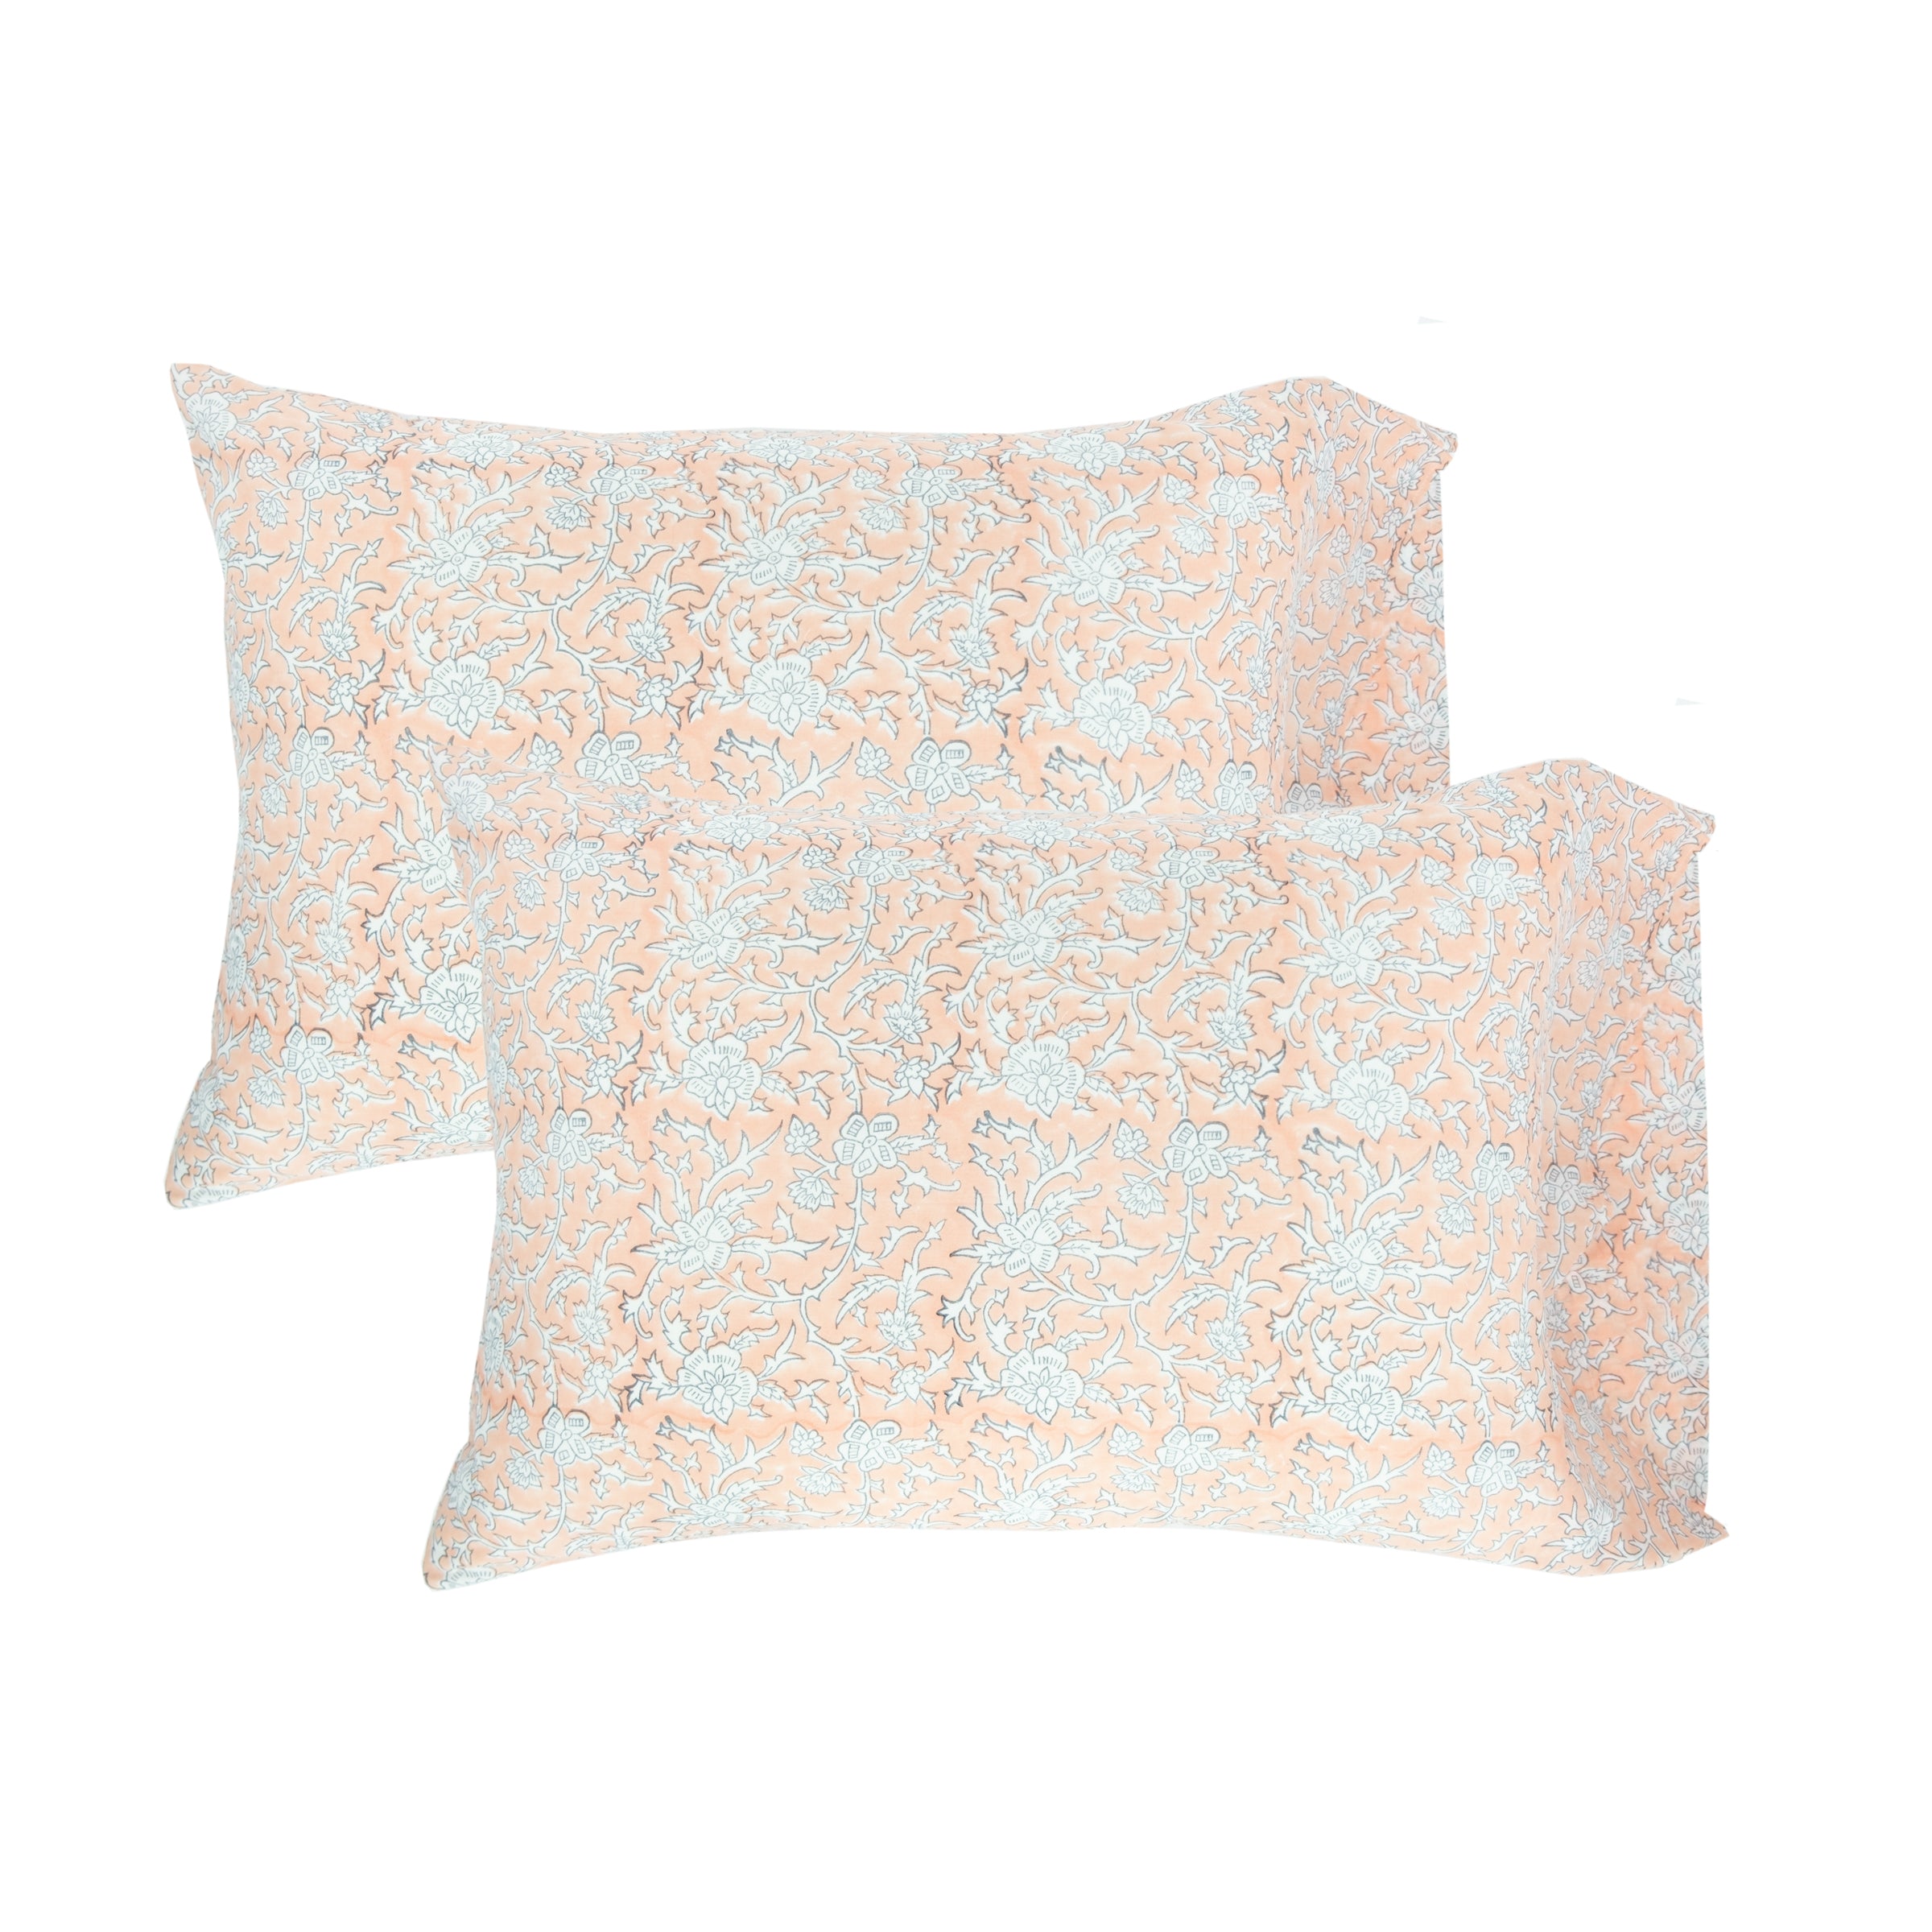 Brittany Peach Pillowcase Pair (21"x 32")